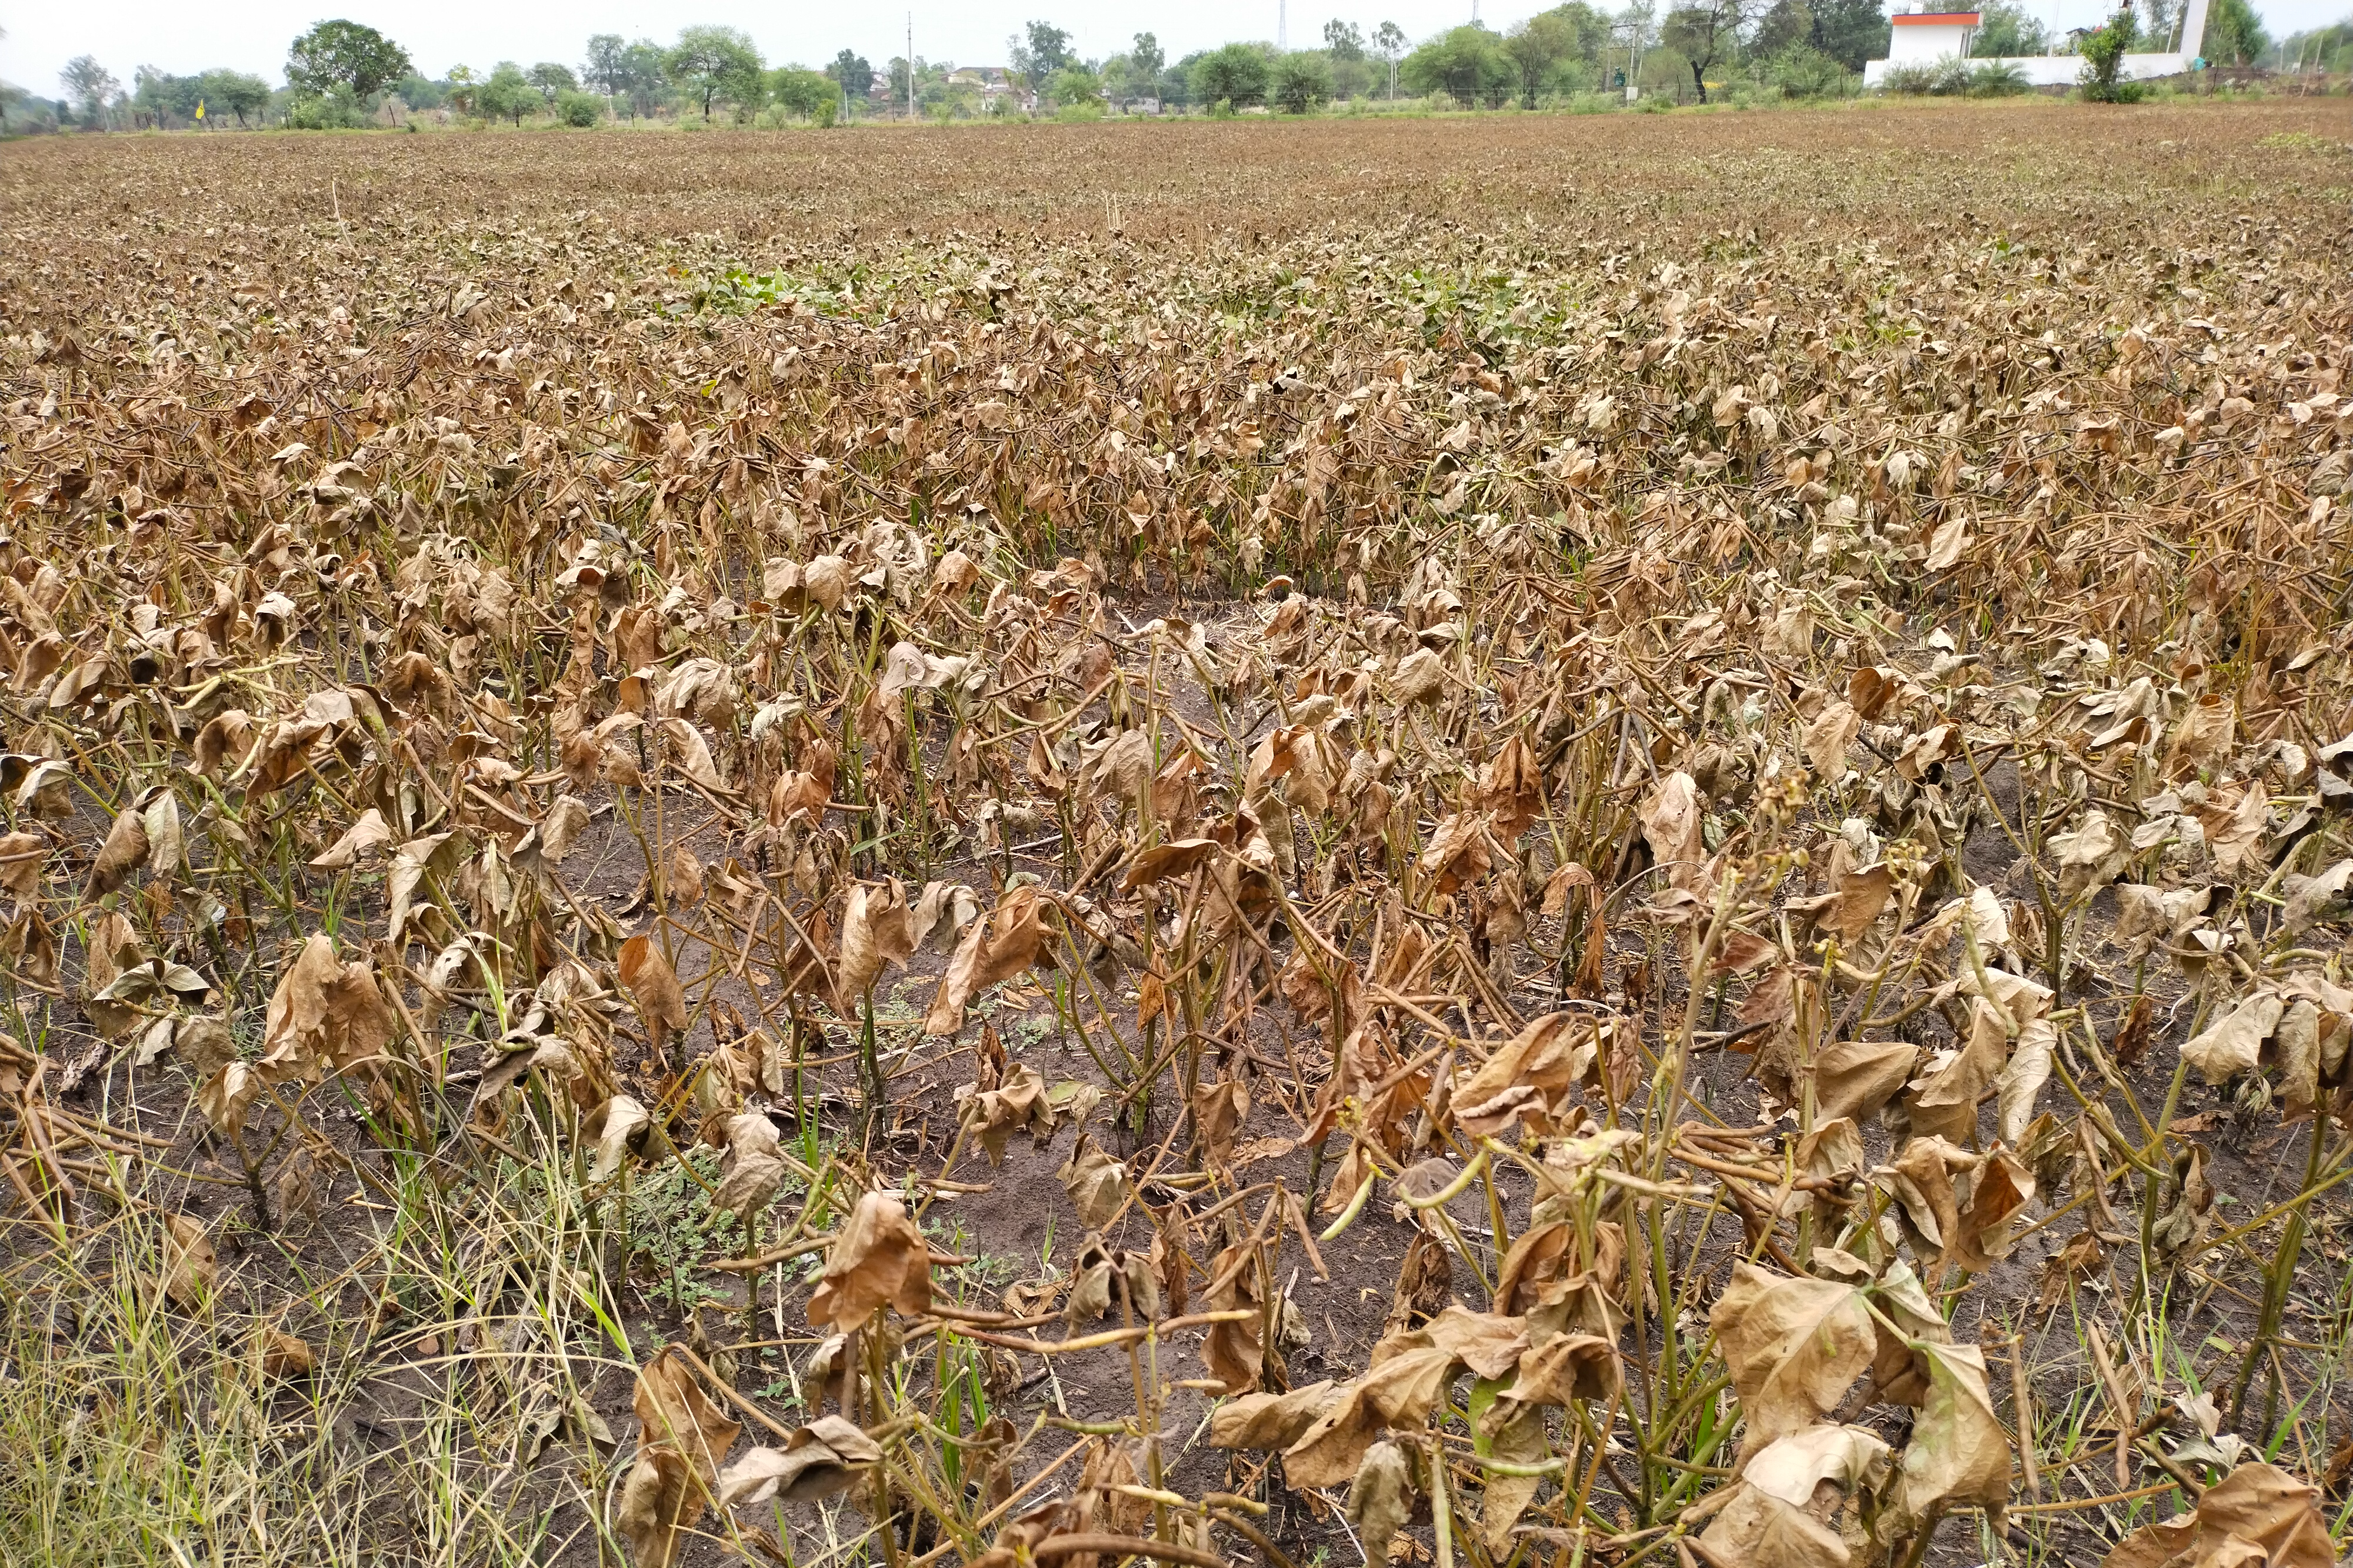 sudden-rainfall-upsets-farmers-over-moong-crop